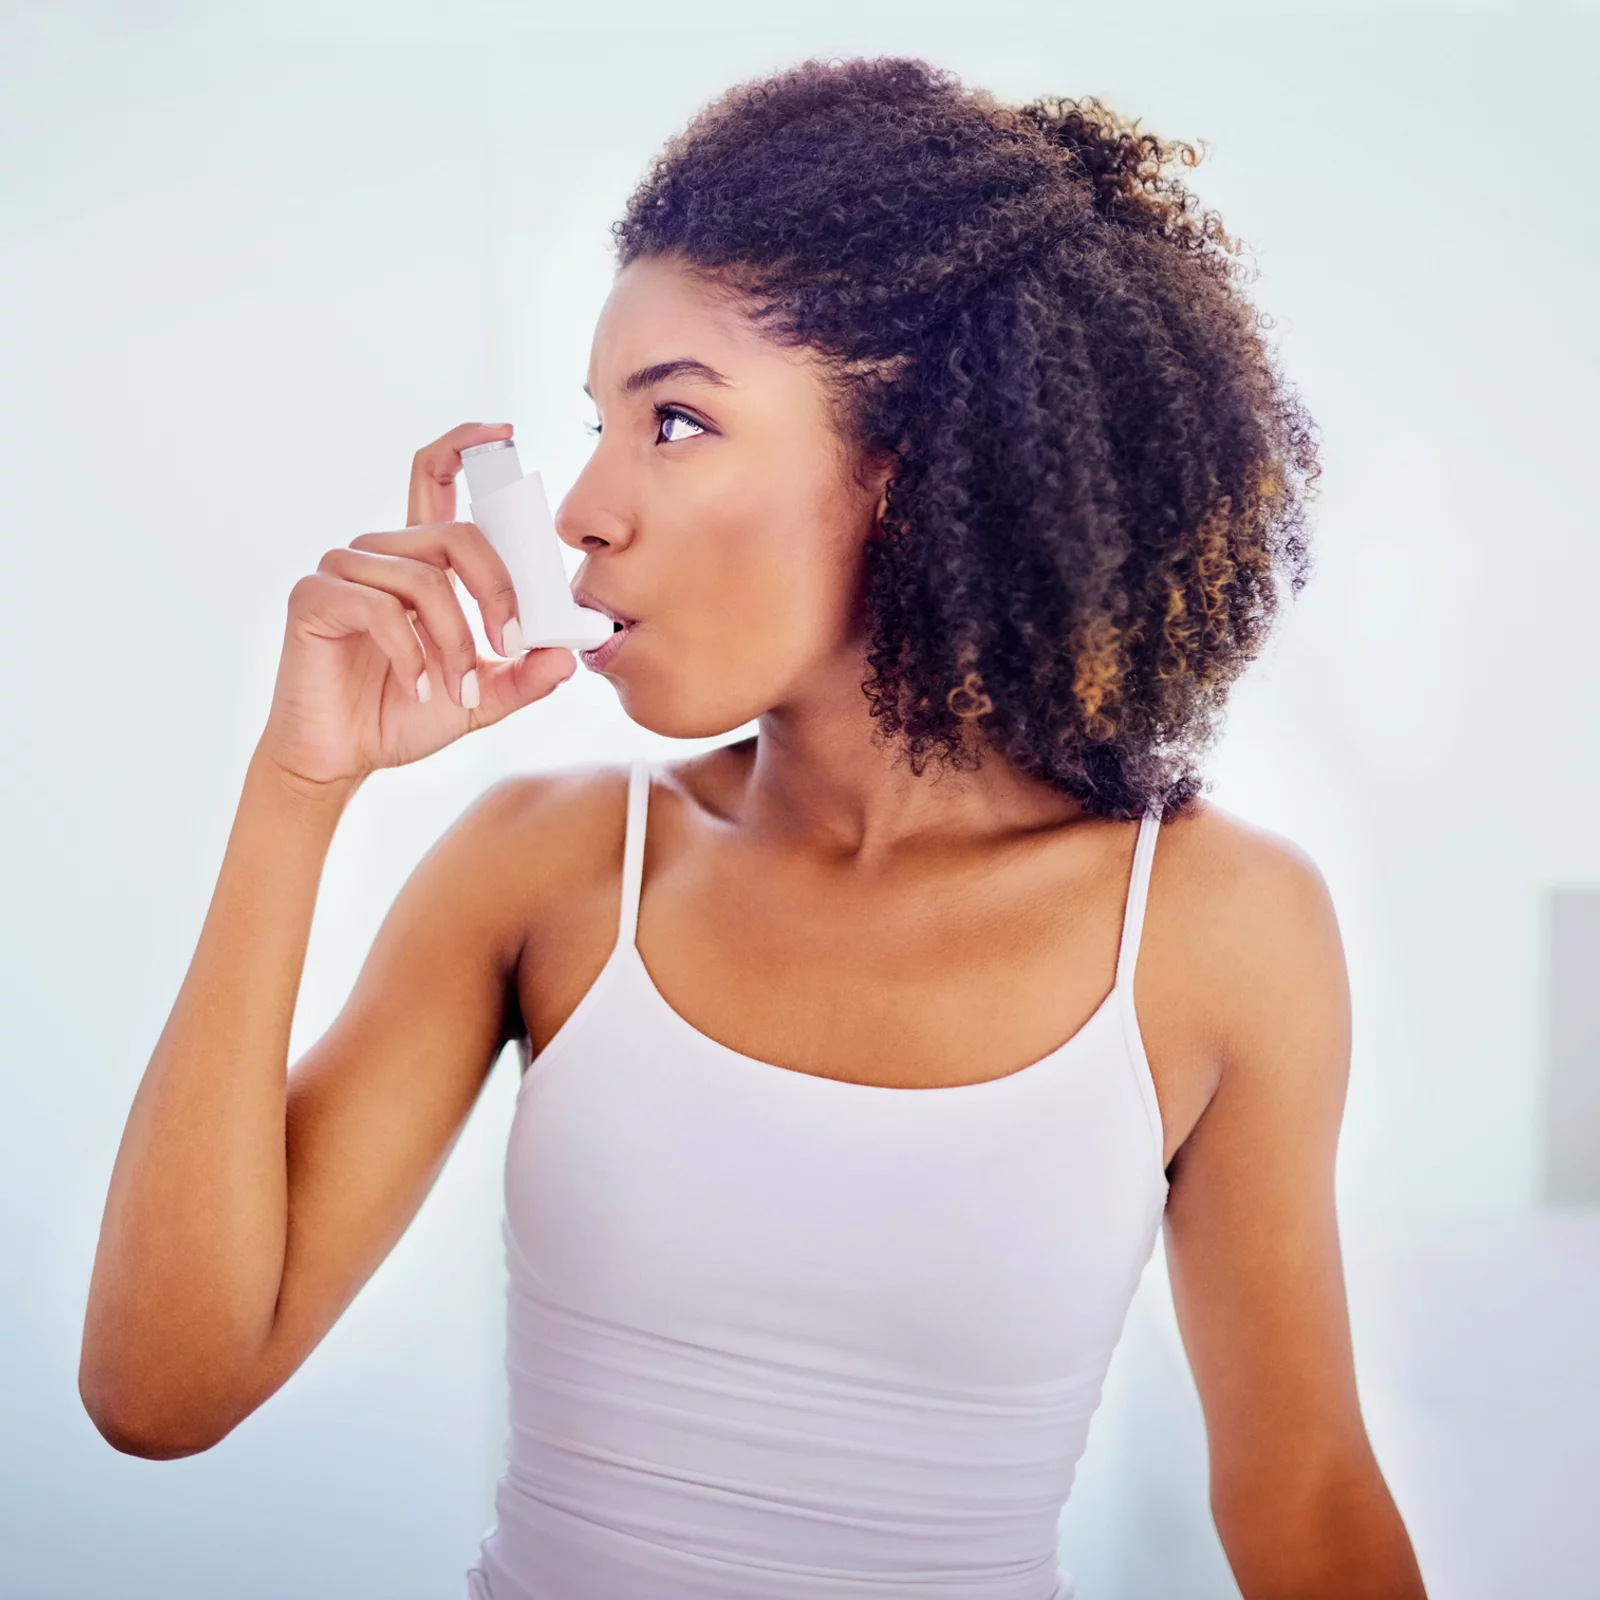 Häufige Symptome bei Asthma